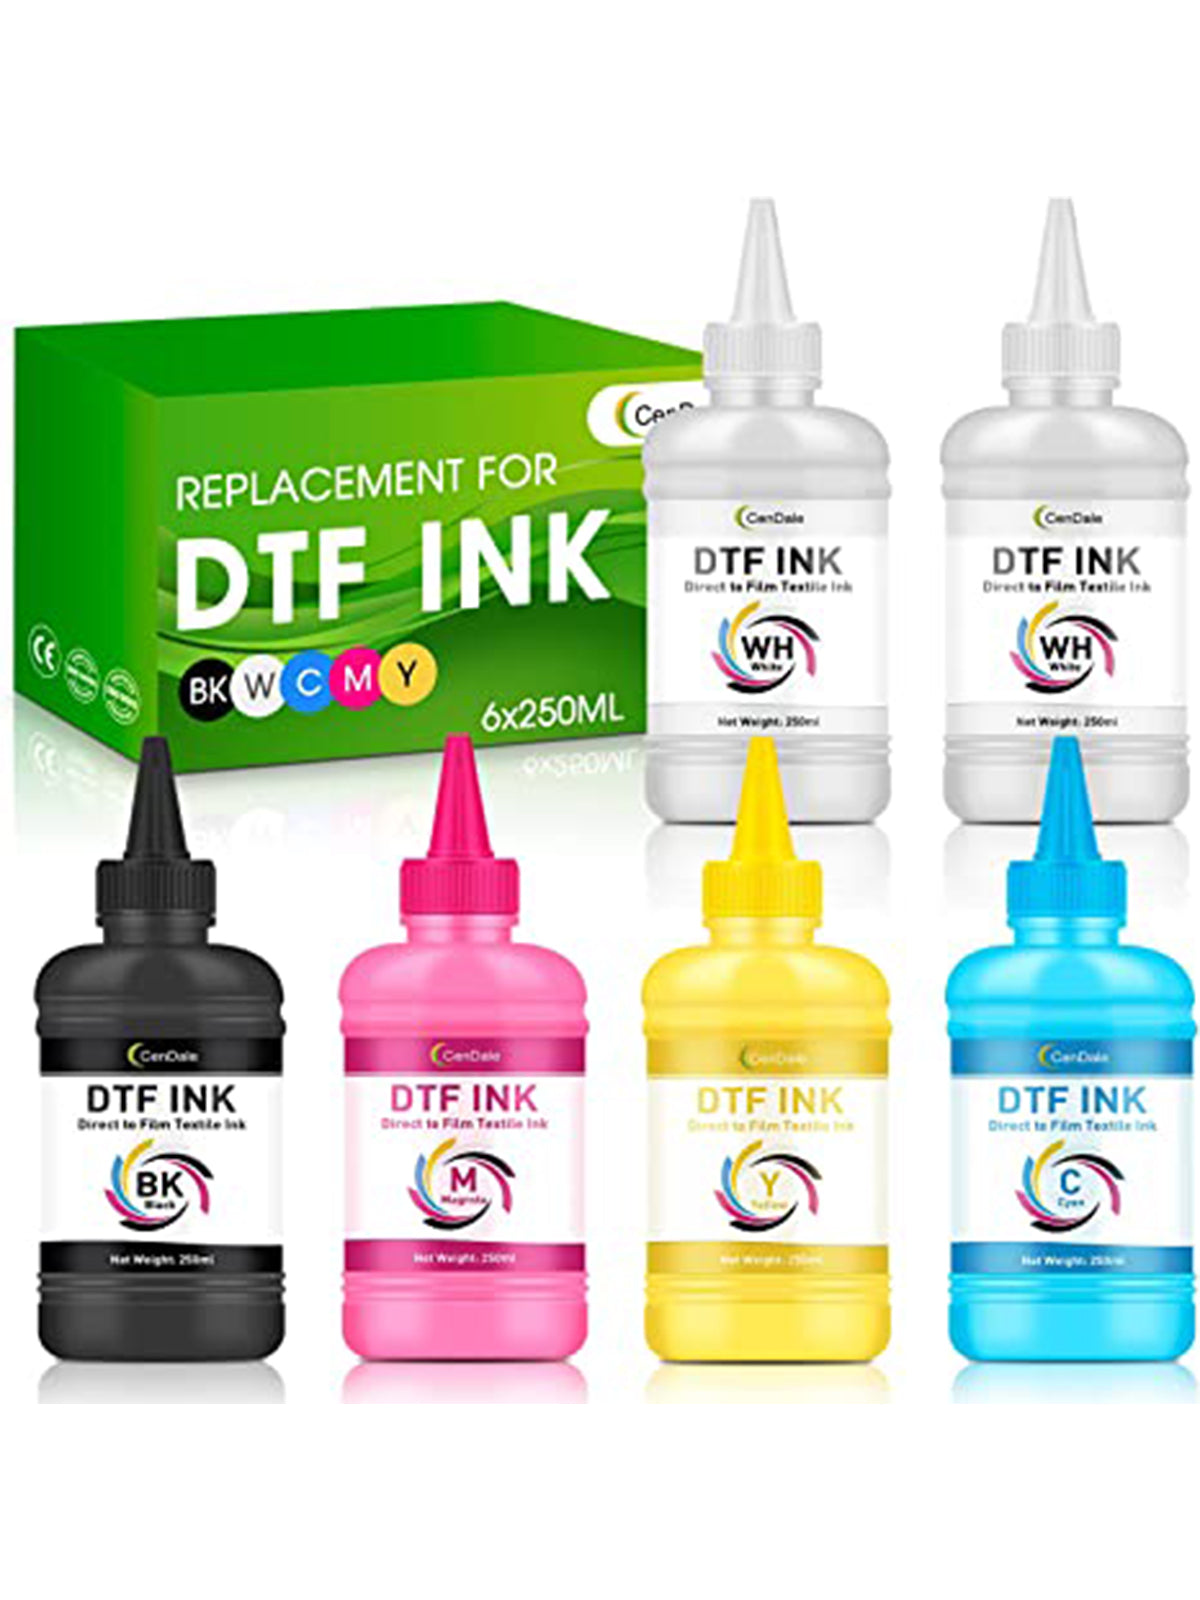 CenDale Premium DTF Ink 1500ml - DTF Transfer Ink for Pet Film, Refill DTF Ink for Epson ET-8550, L1800, L800, R2400, P400, P800, XP15000, Heat